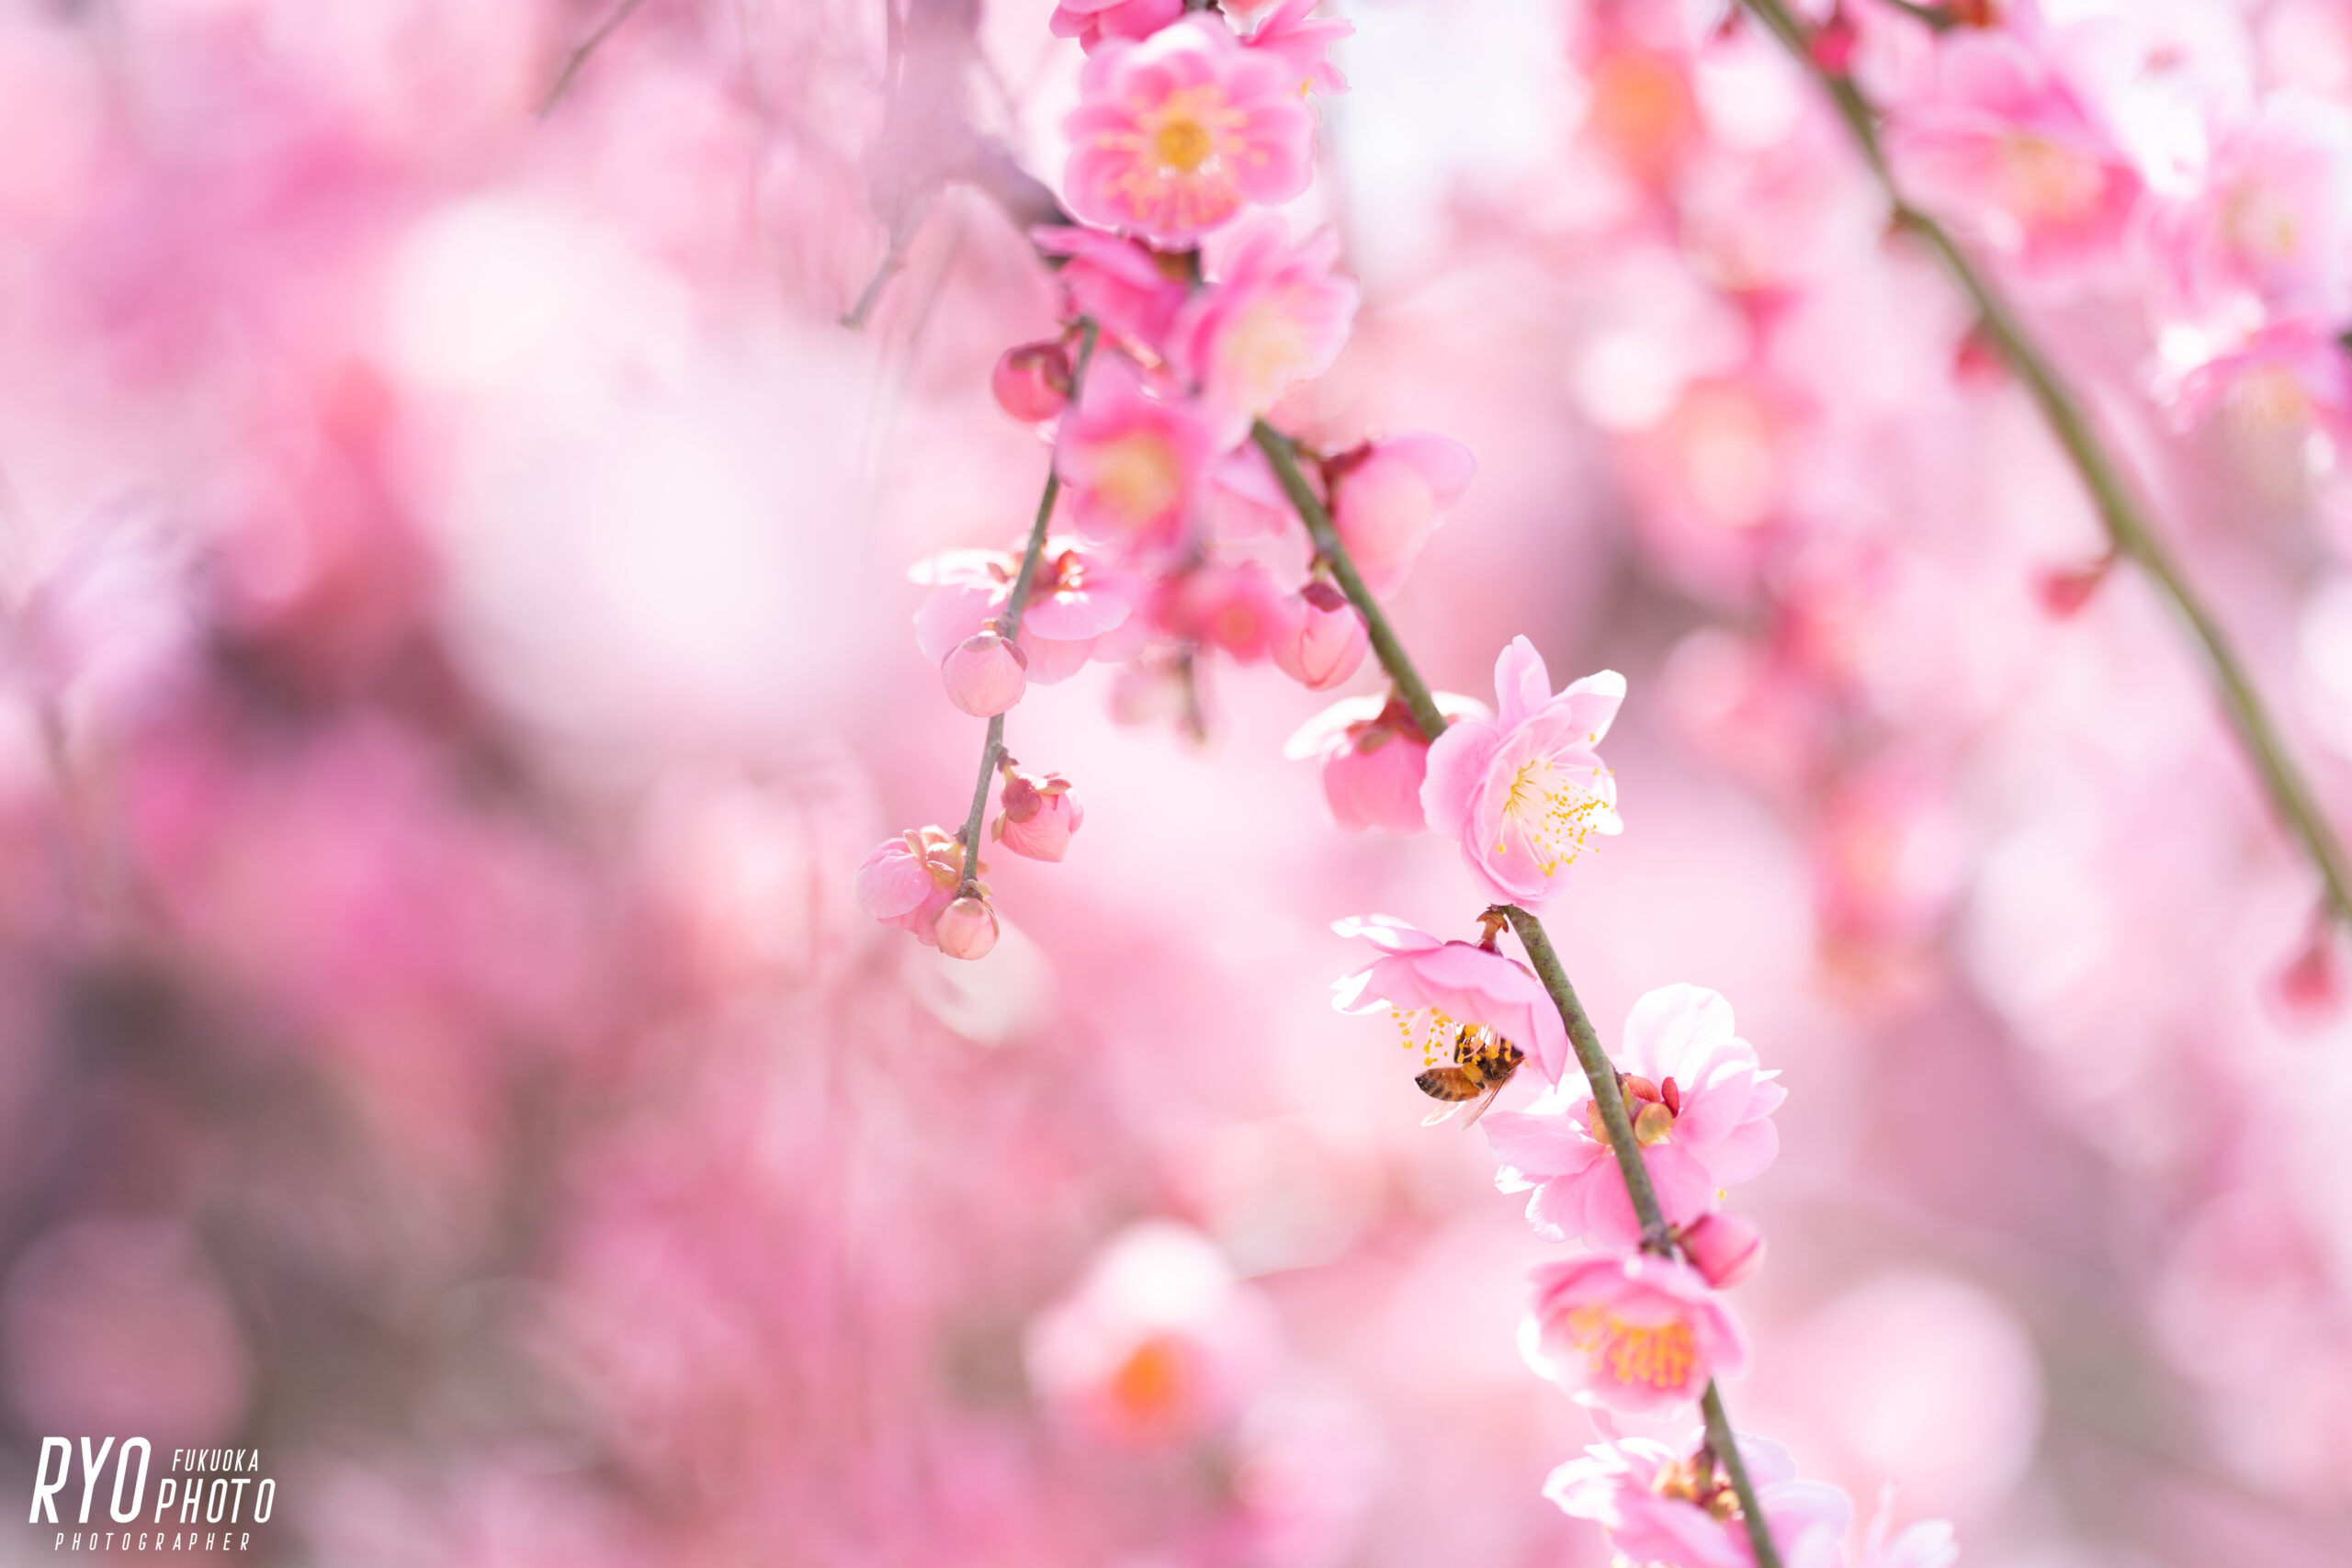 大牟田氏普光寺で撮影した梅の写真